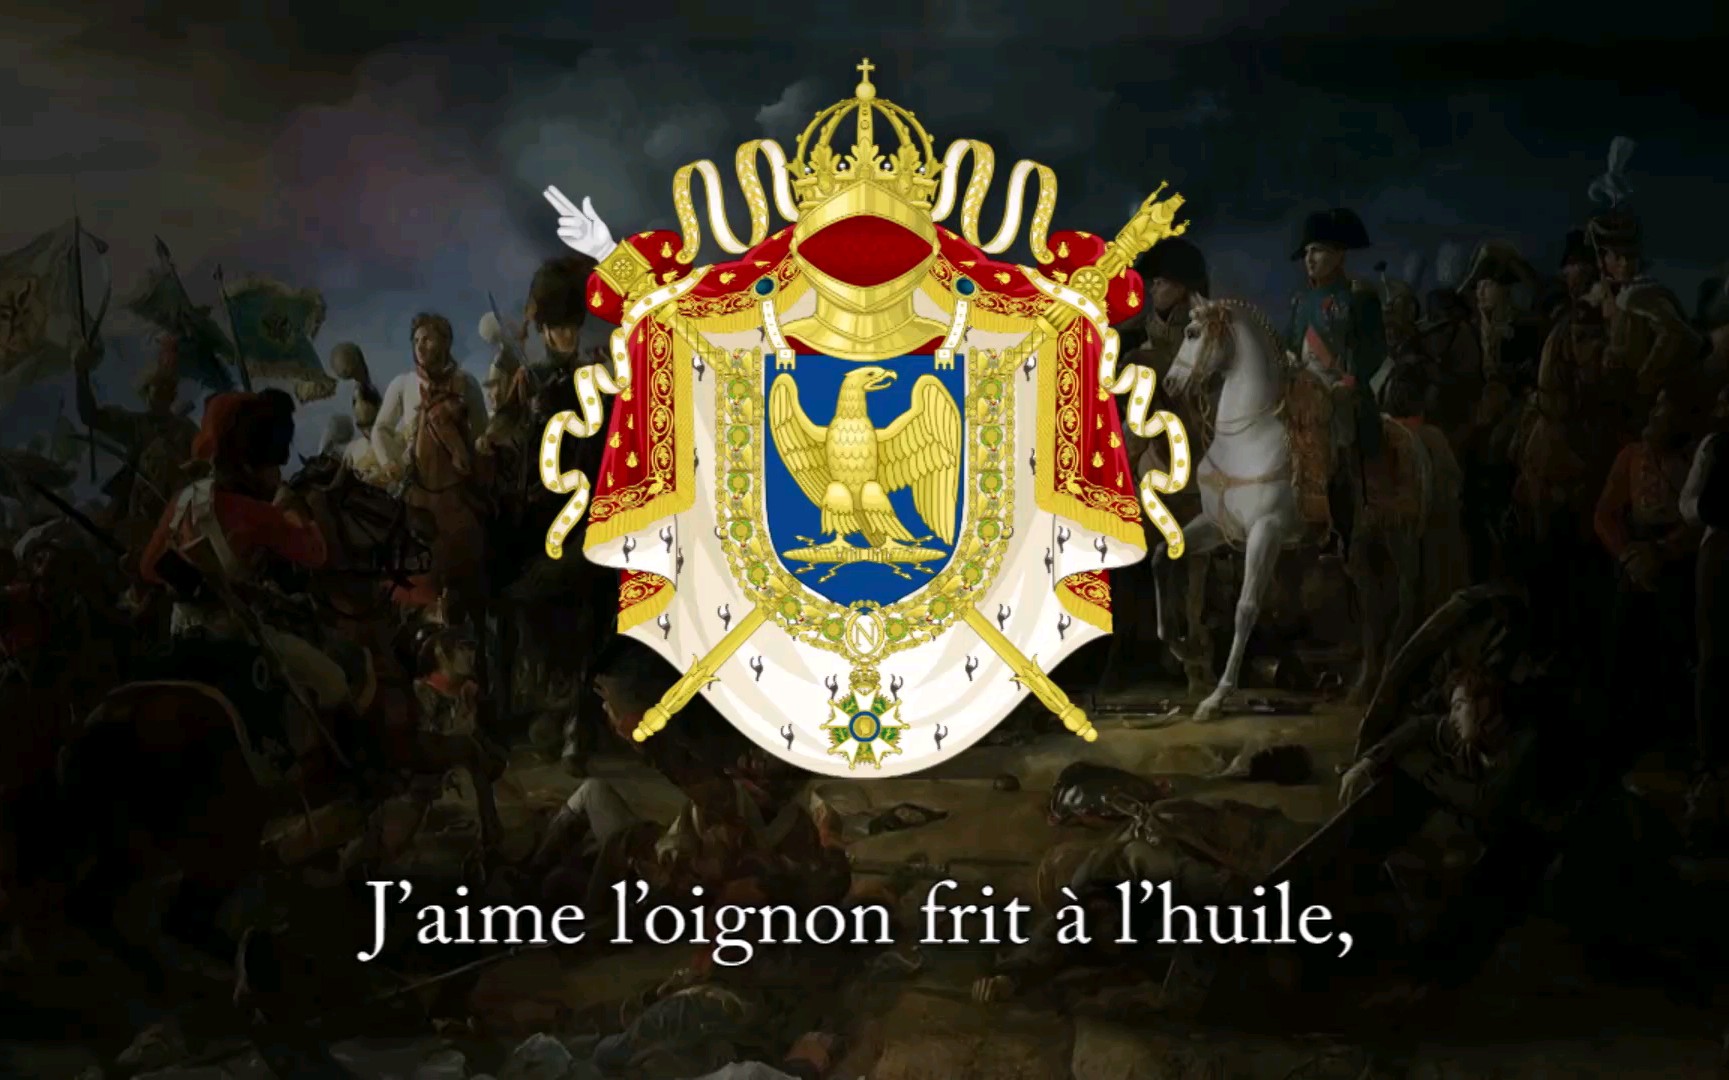 法兰西第一帝国 军旗图片